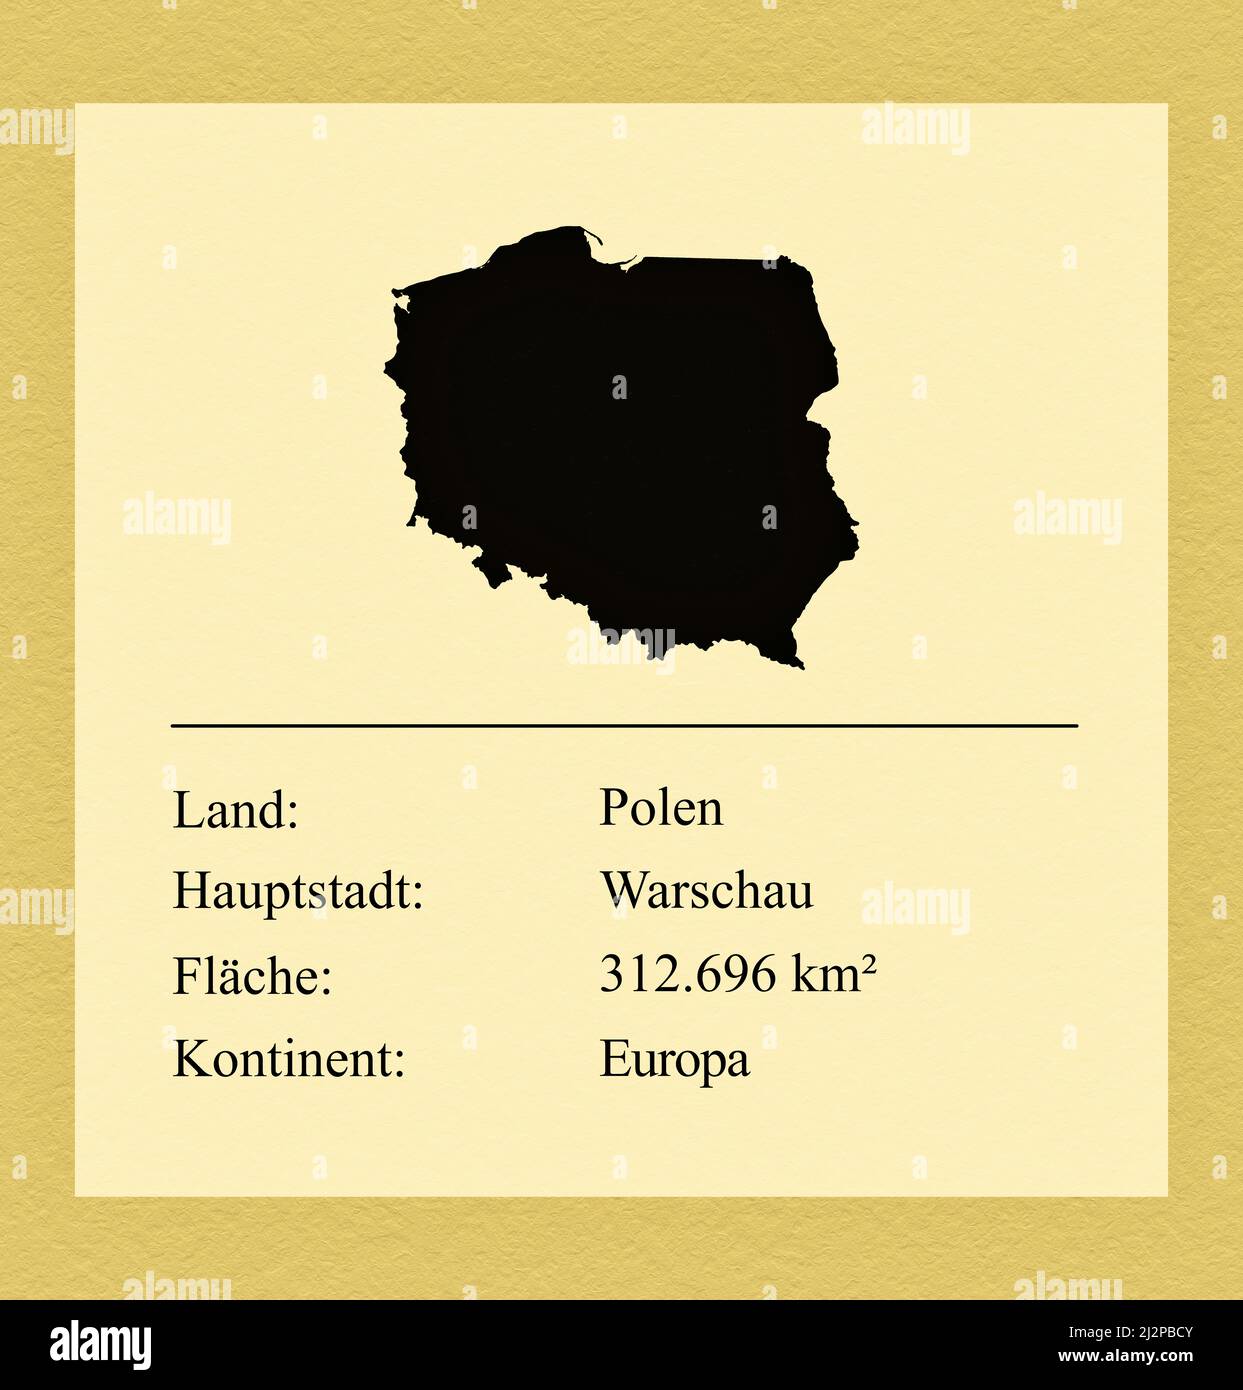 Umrisse des Landes Polen, darunter ein kleiner Steckbrief mit Ländernamen, Hauptstadt, Fläche und Kontinent Foto Stock